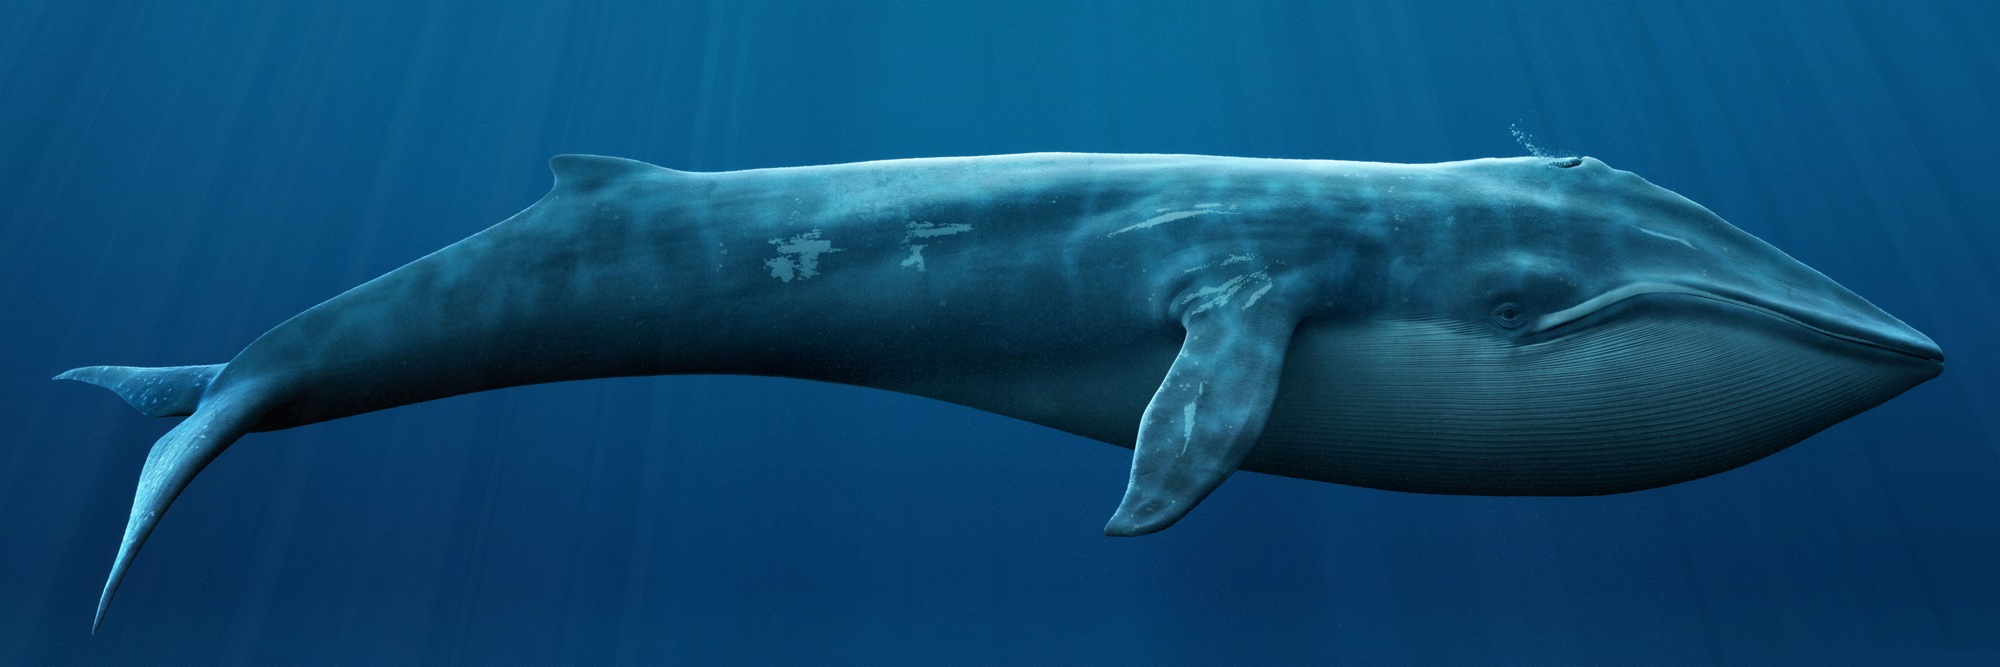 blue-whale-5